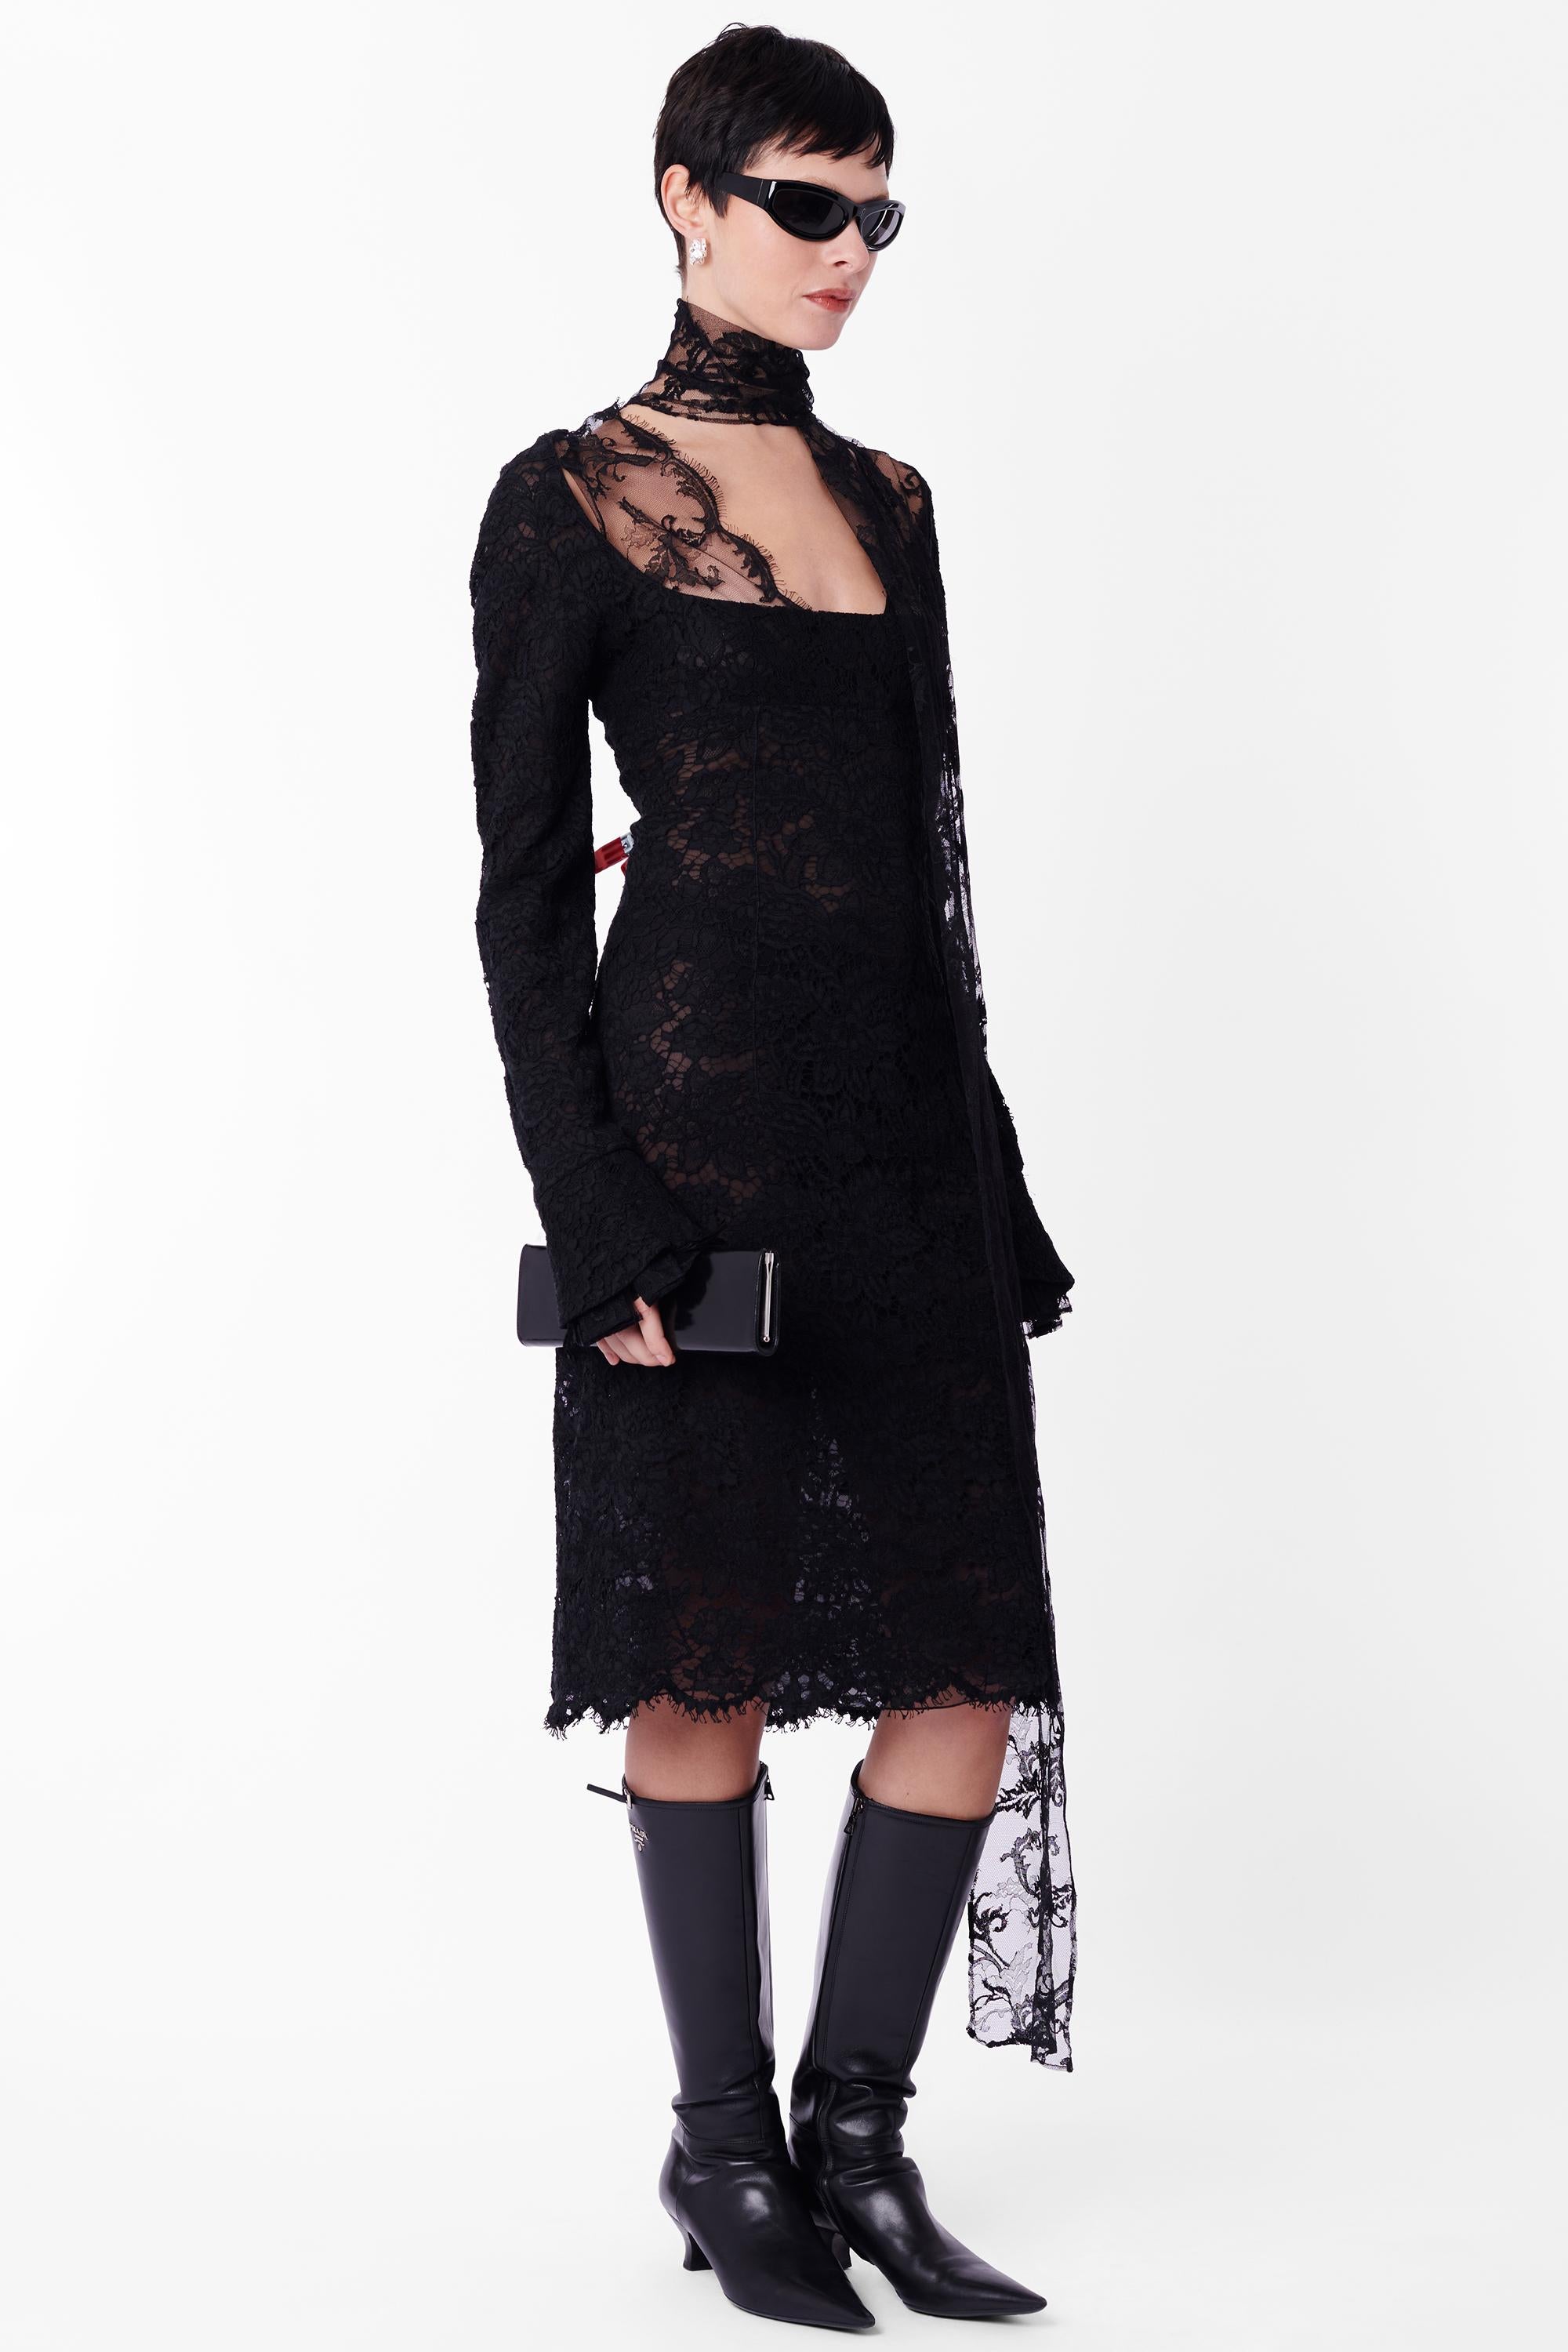 Vintage Yves Saint Laurent by Tom Ford Herbst Winter 2002 seltenes schwarzes Kleid aus Guipure-Spitze. Wie auf dem Laufsteg gesehen, Look 33. Body aus Guipure-Spitze, lange Ärmel mit plissierten Manschetten, offener, quadratischer Halsausschnitt mit